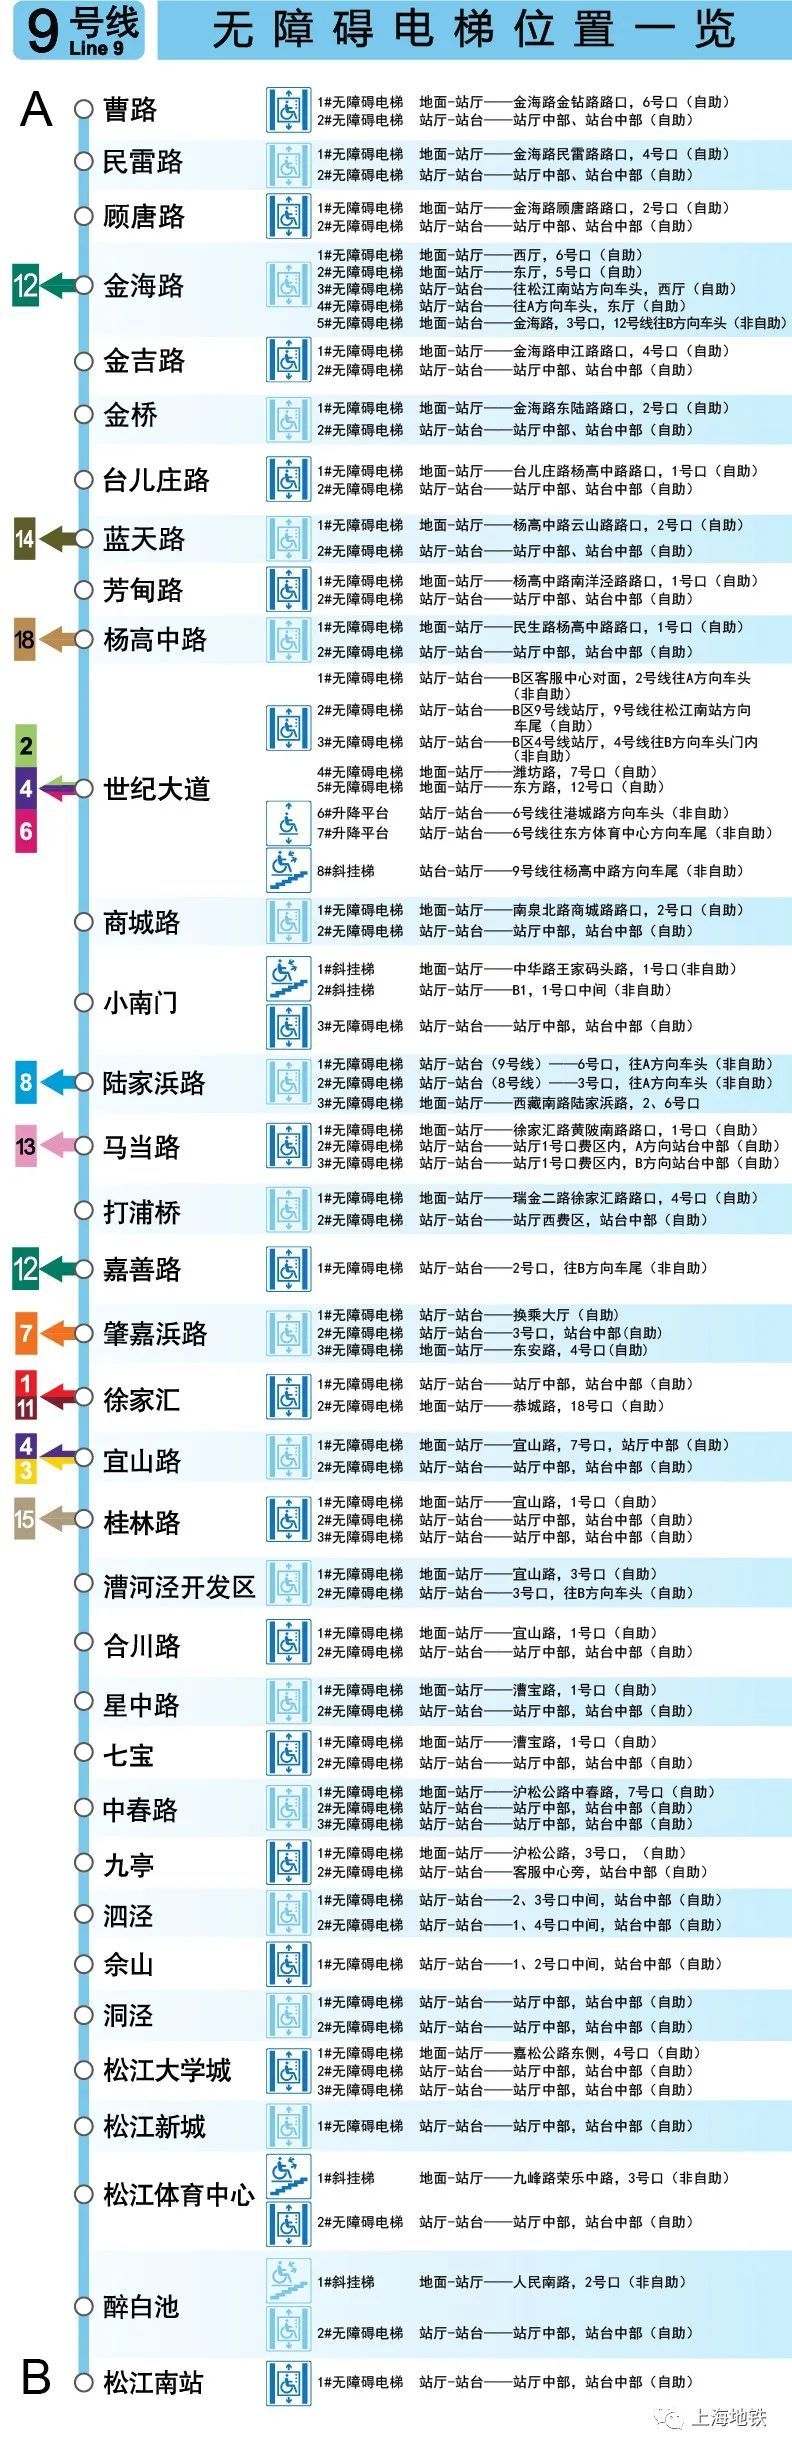 上海地铁票价查询表图图片